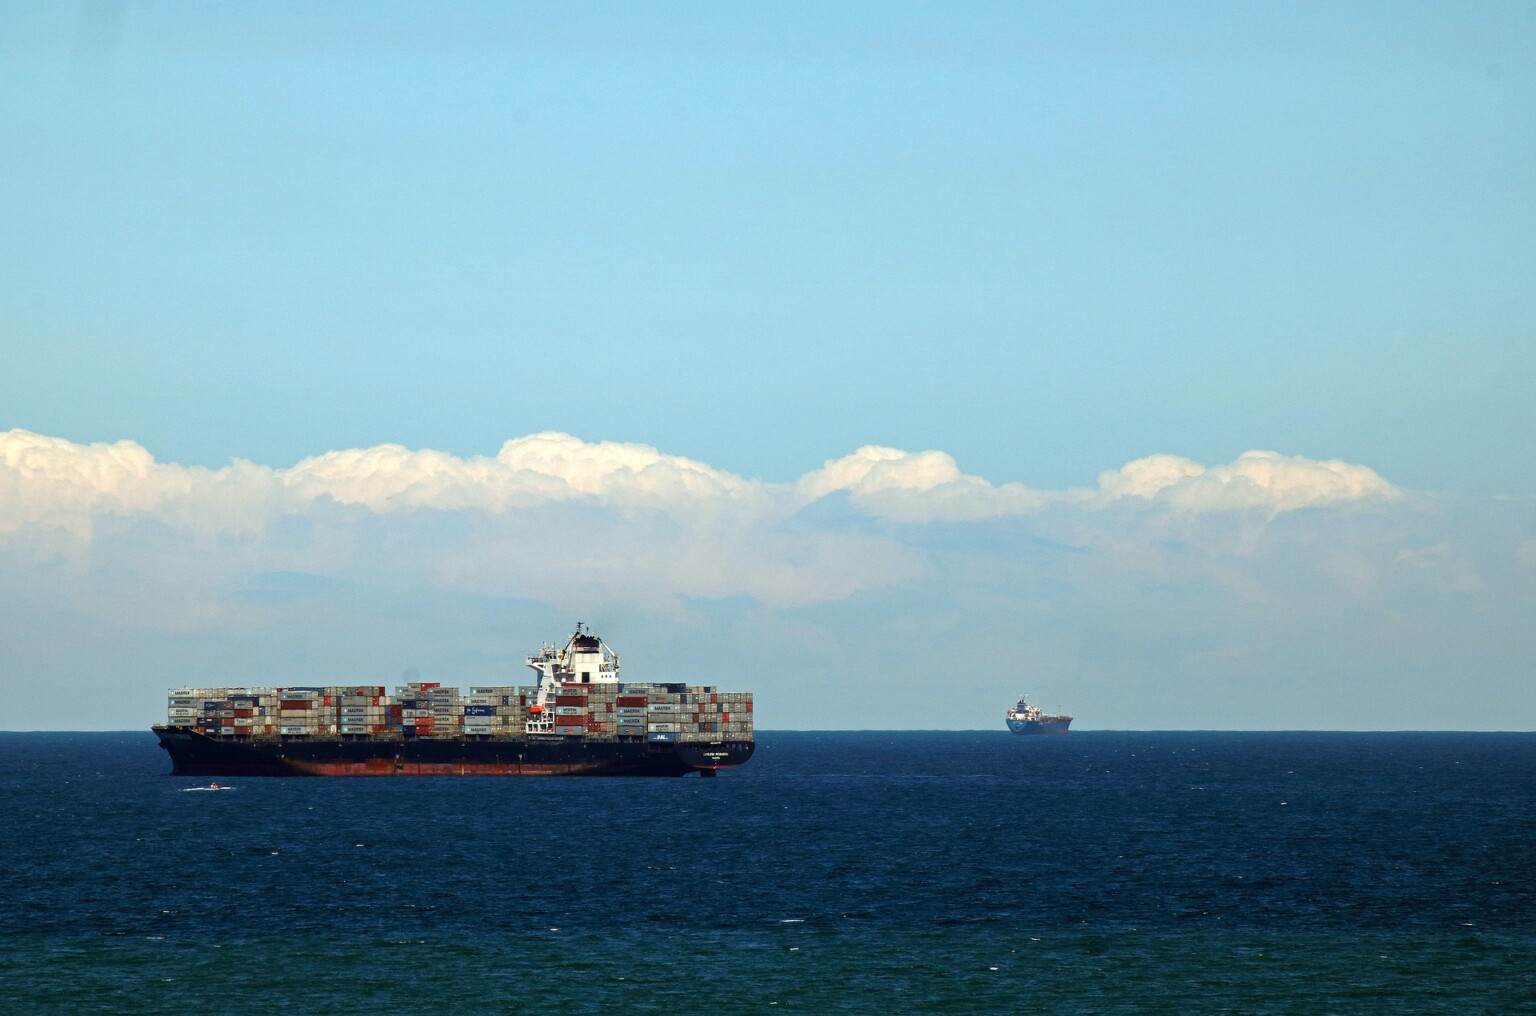 containervervoer in rap tempo duurder door onrust op Rode Zee